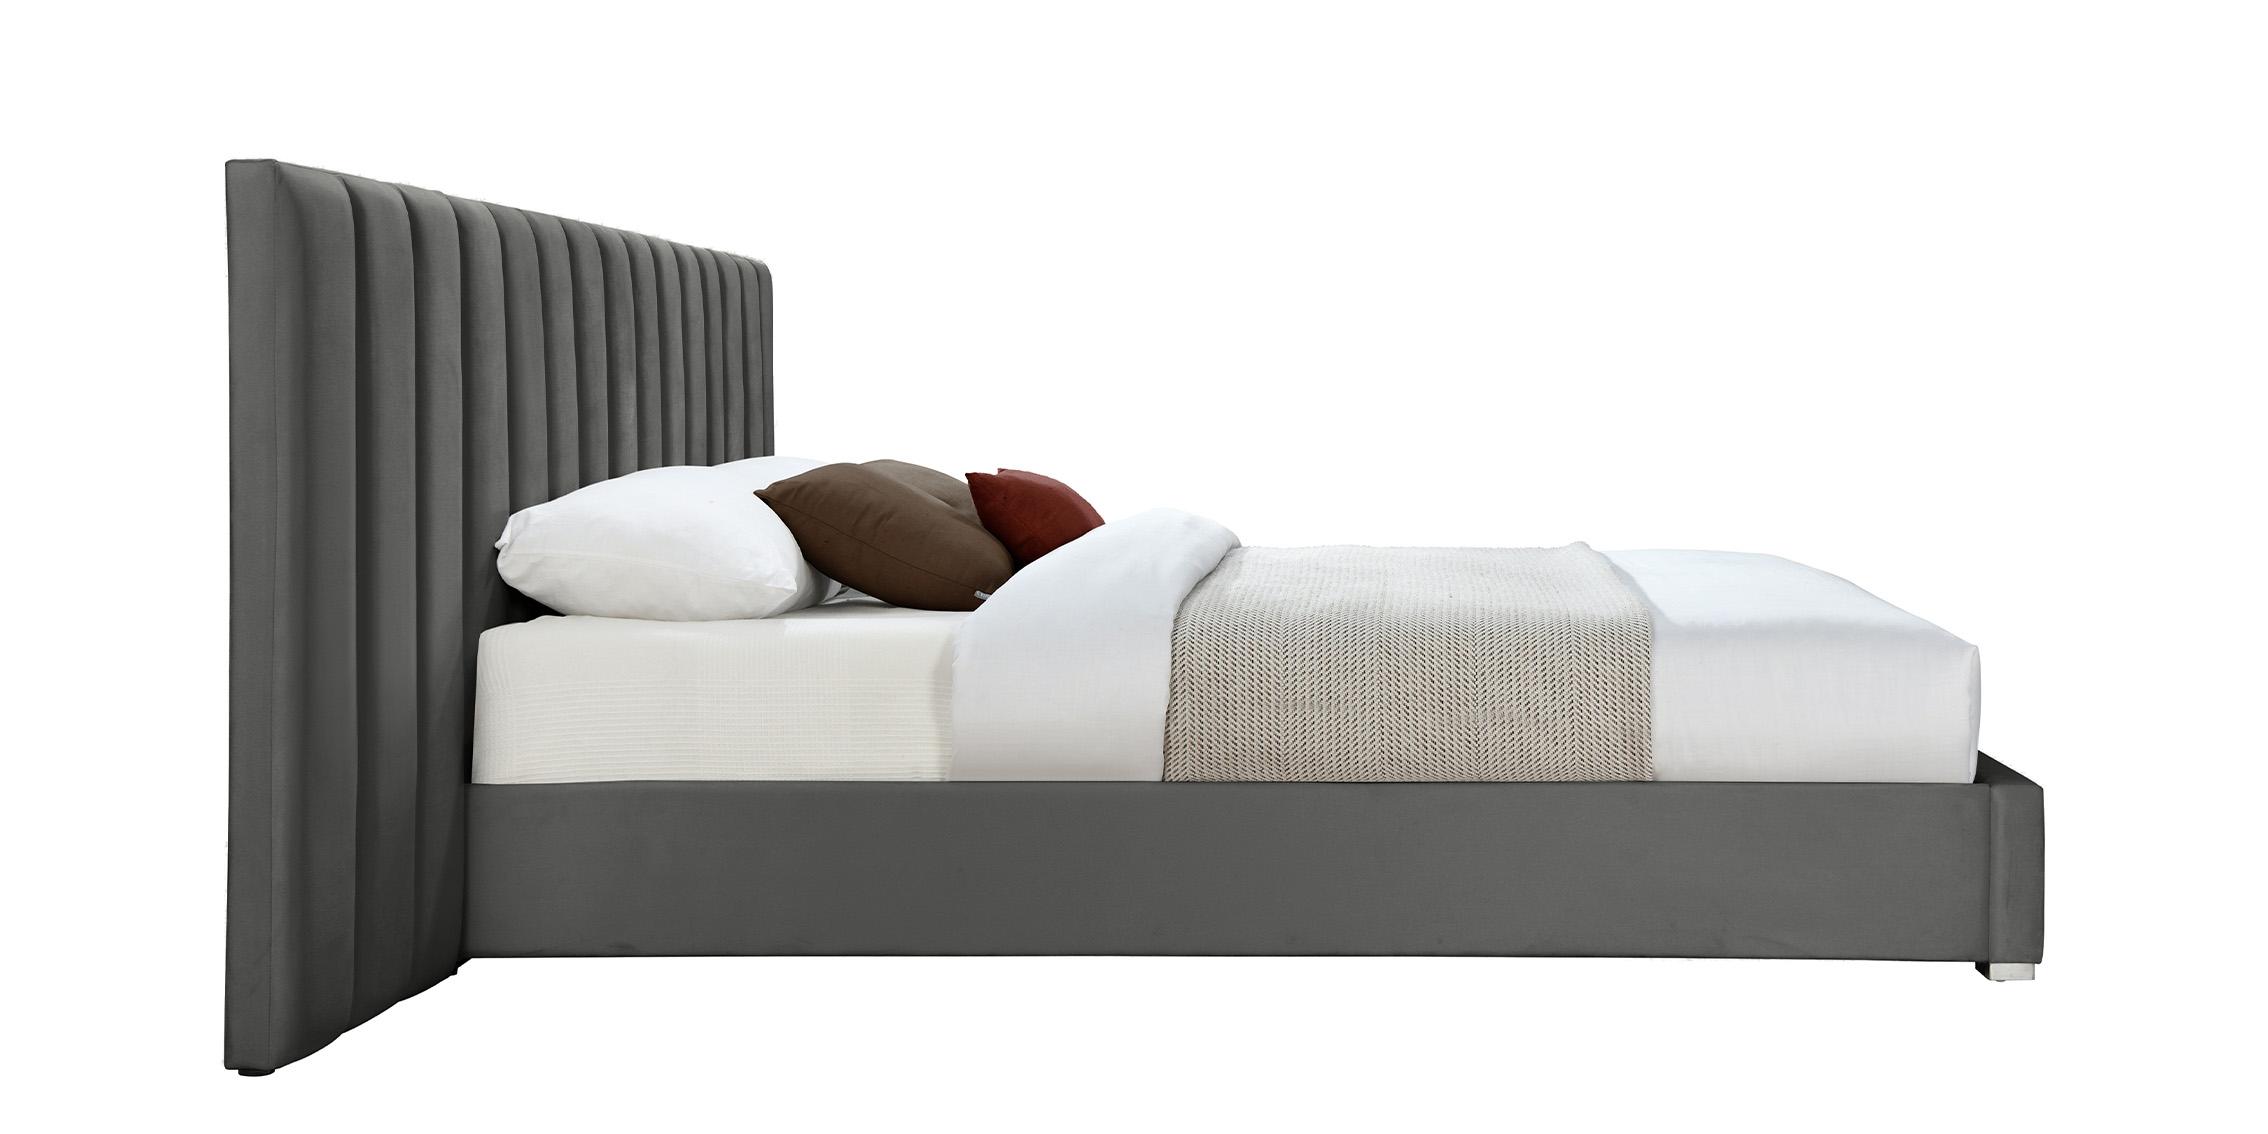 

    
PabloGrey-K Meridian Furniture Platform Bed
